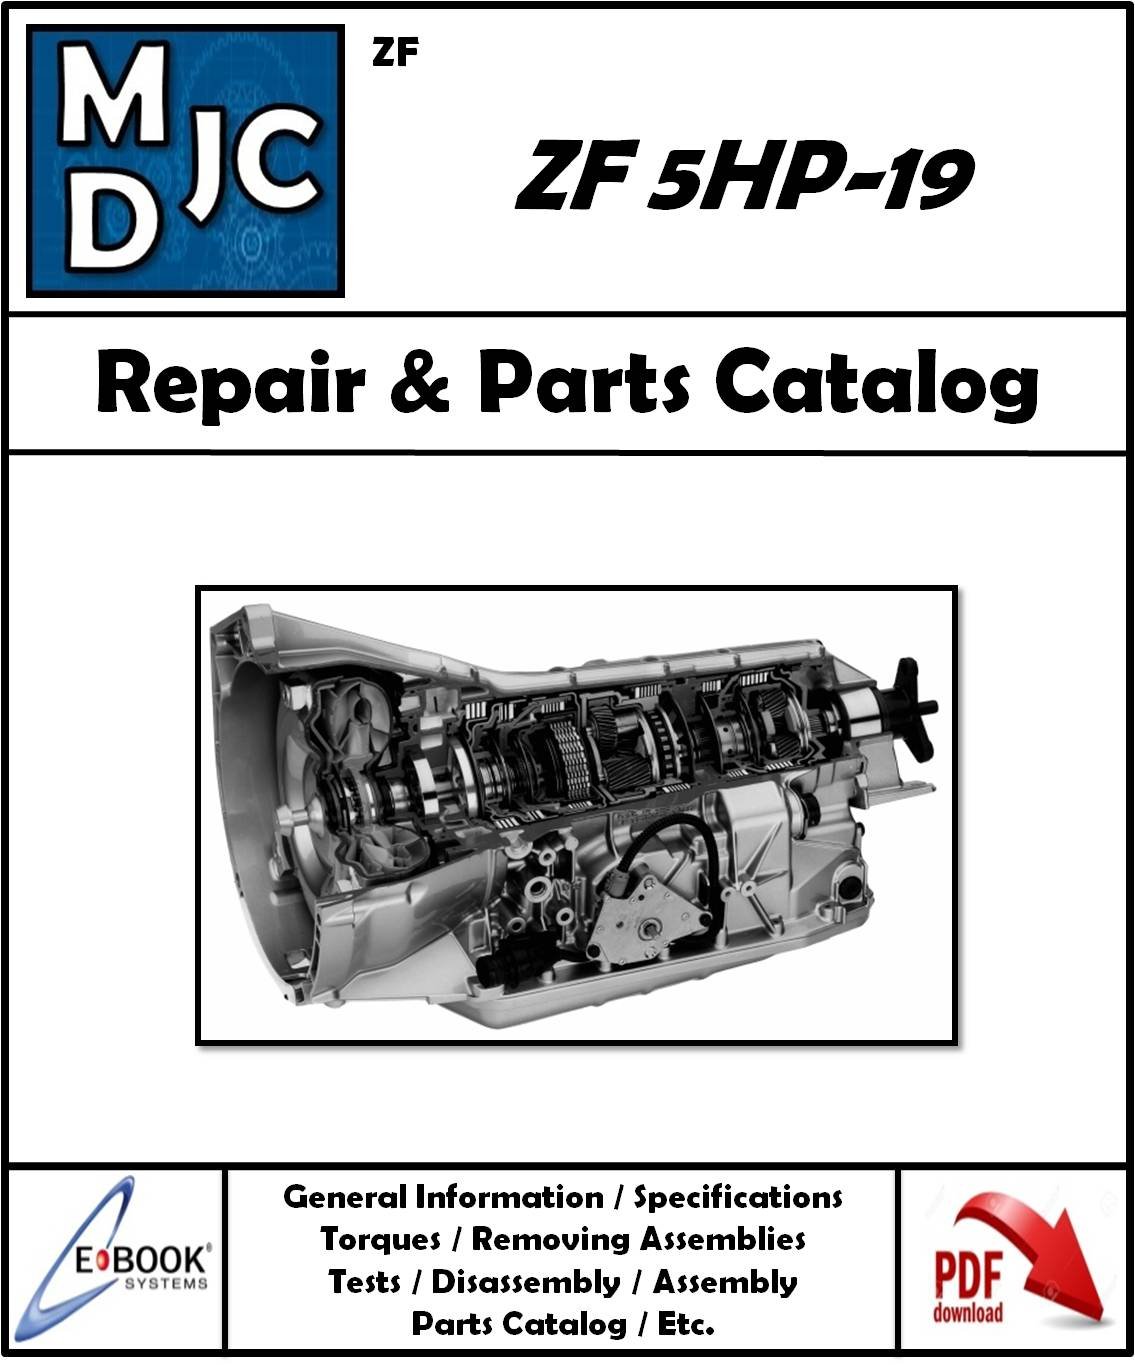 Manual de Taller y Catalogo de Partes Caja ZF 5HP-19